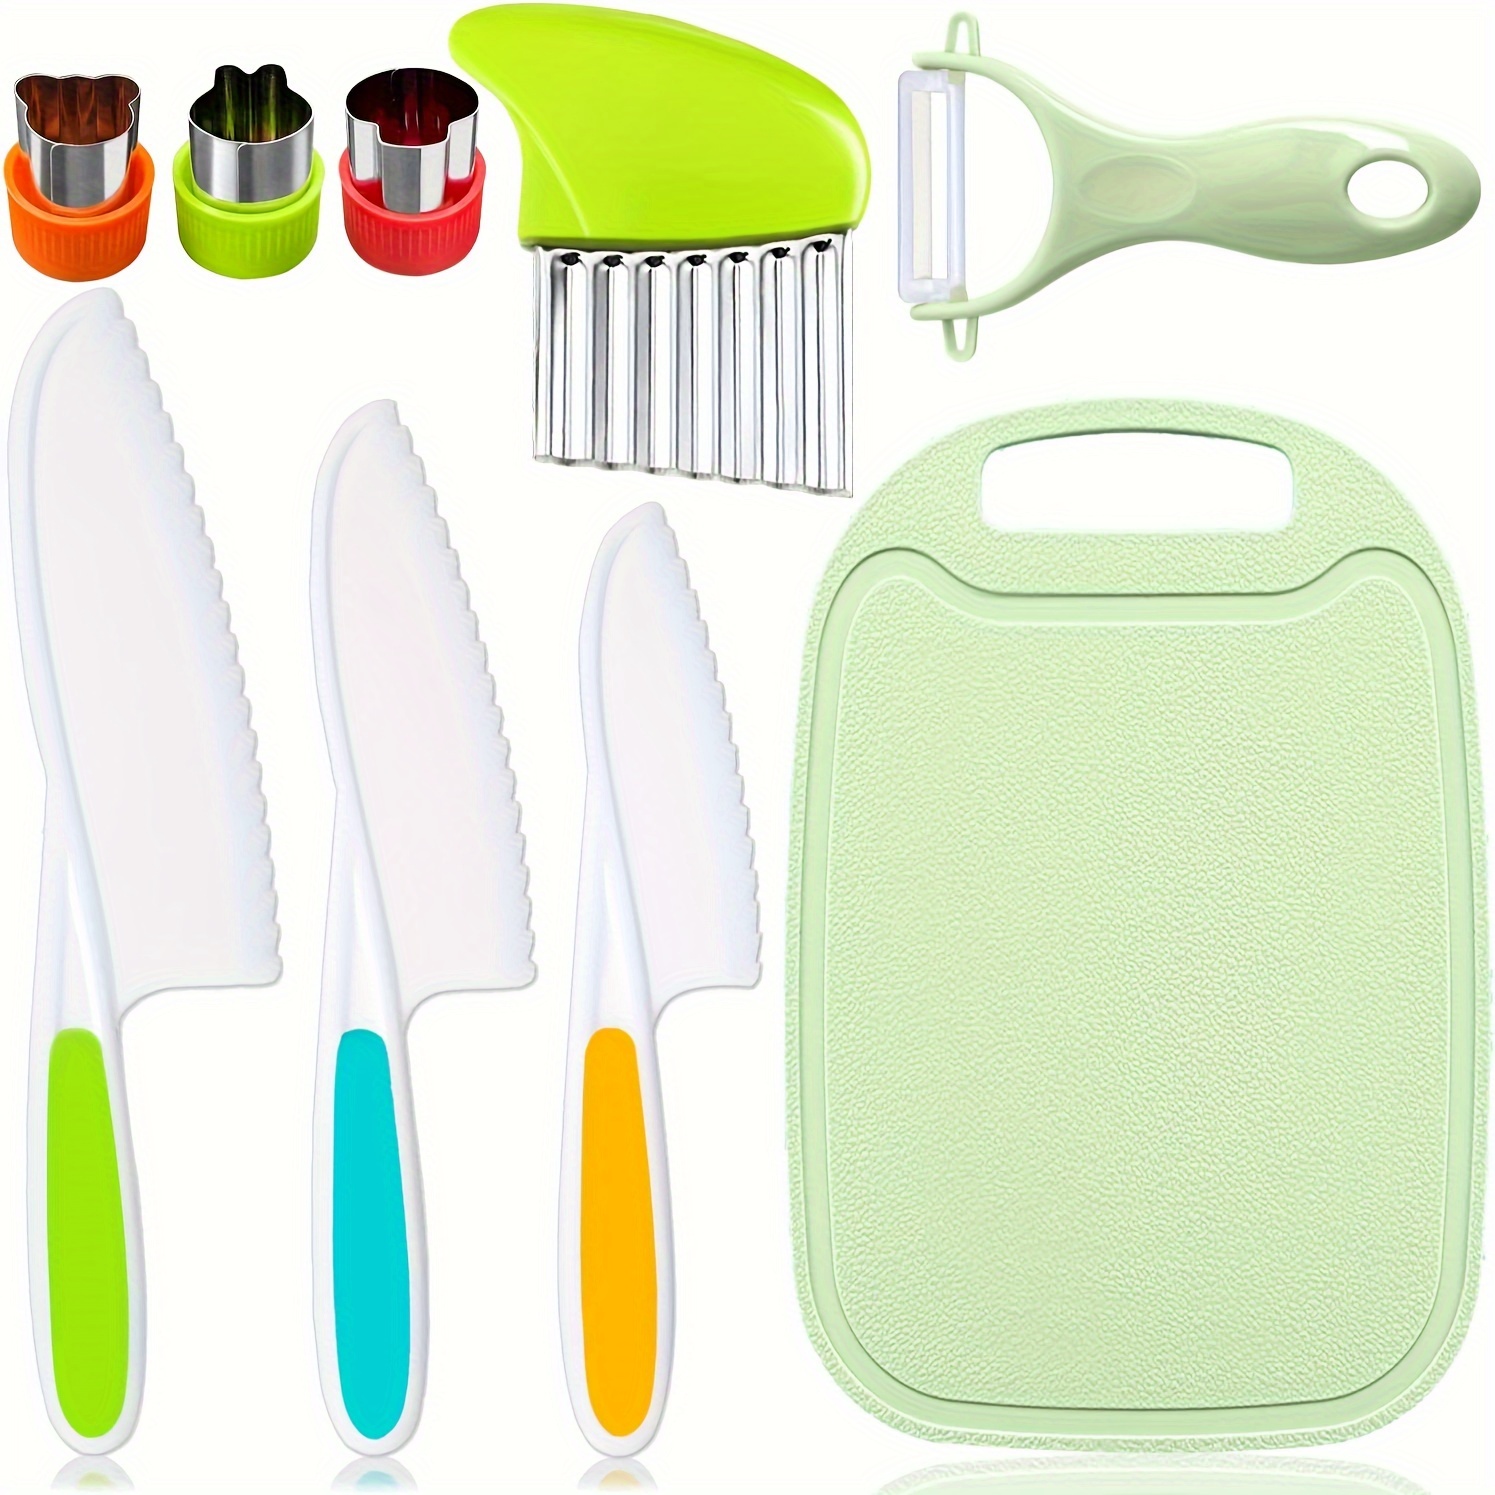  6 cuchillos de madera para niños para cocinar, cuchillos  seguros para niños, cortar verduras, frutas, incluye cuchillo de madera para  niños, rebanadores de papas de plástico, cuchillos de cocina, bordes  dentados